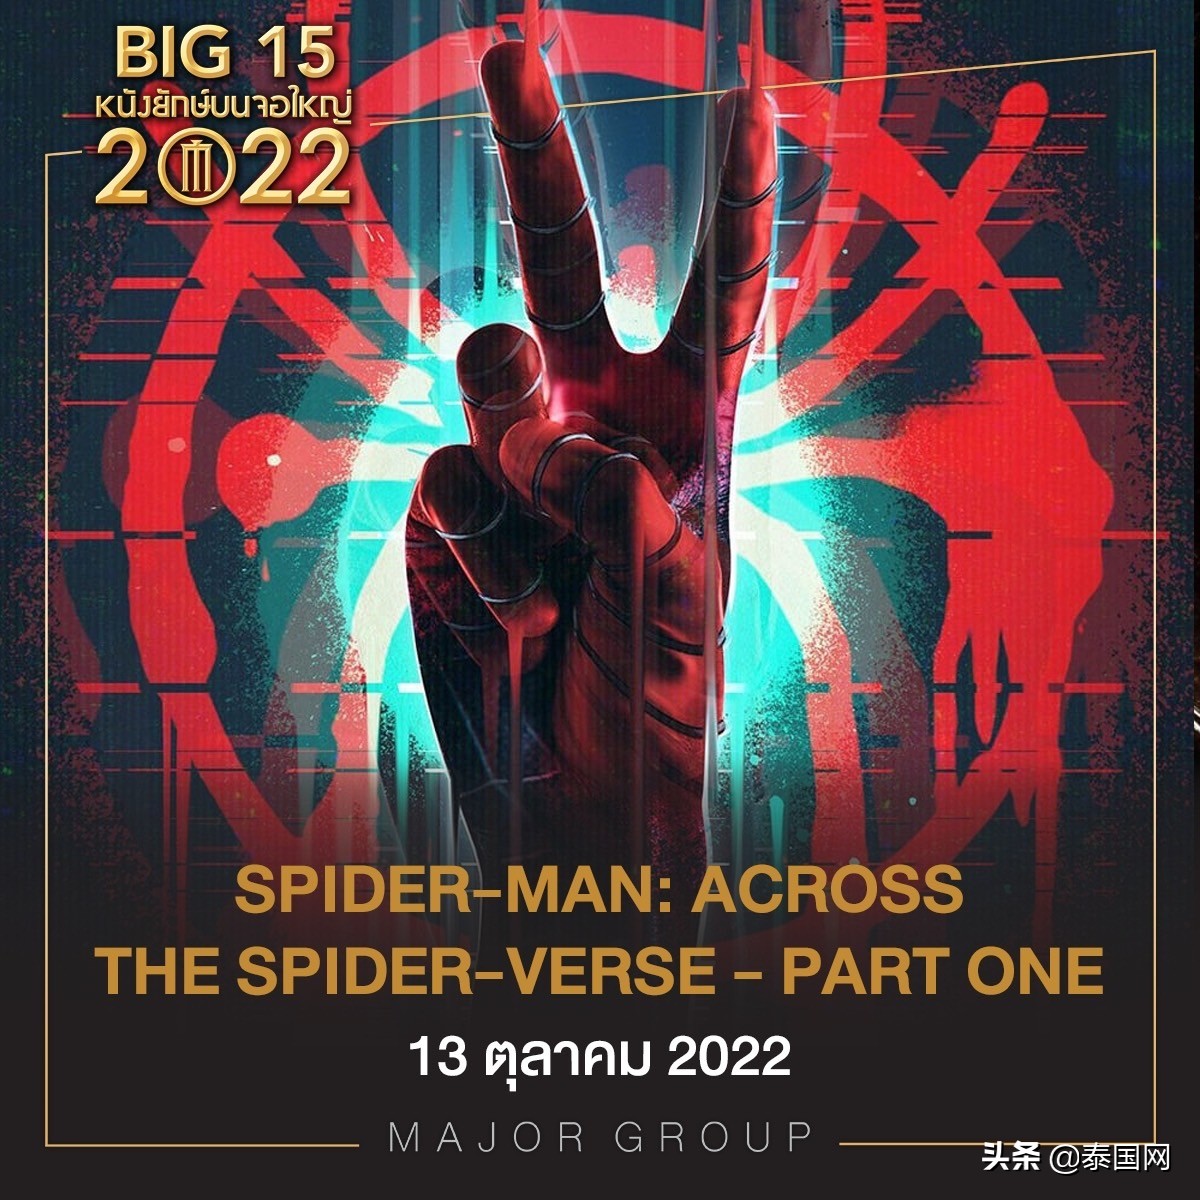 盘点2022泰国影院即将上映的15部巨制电影